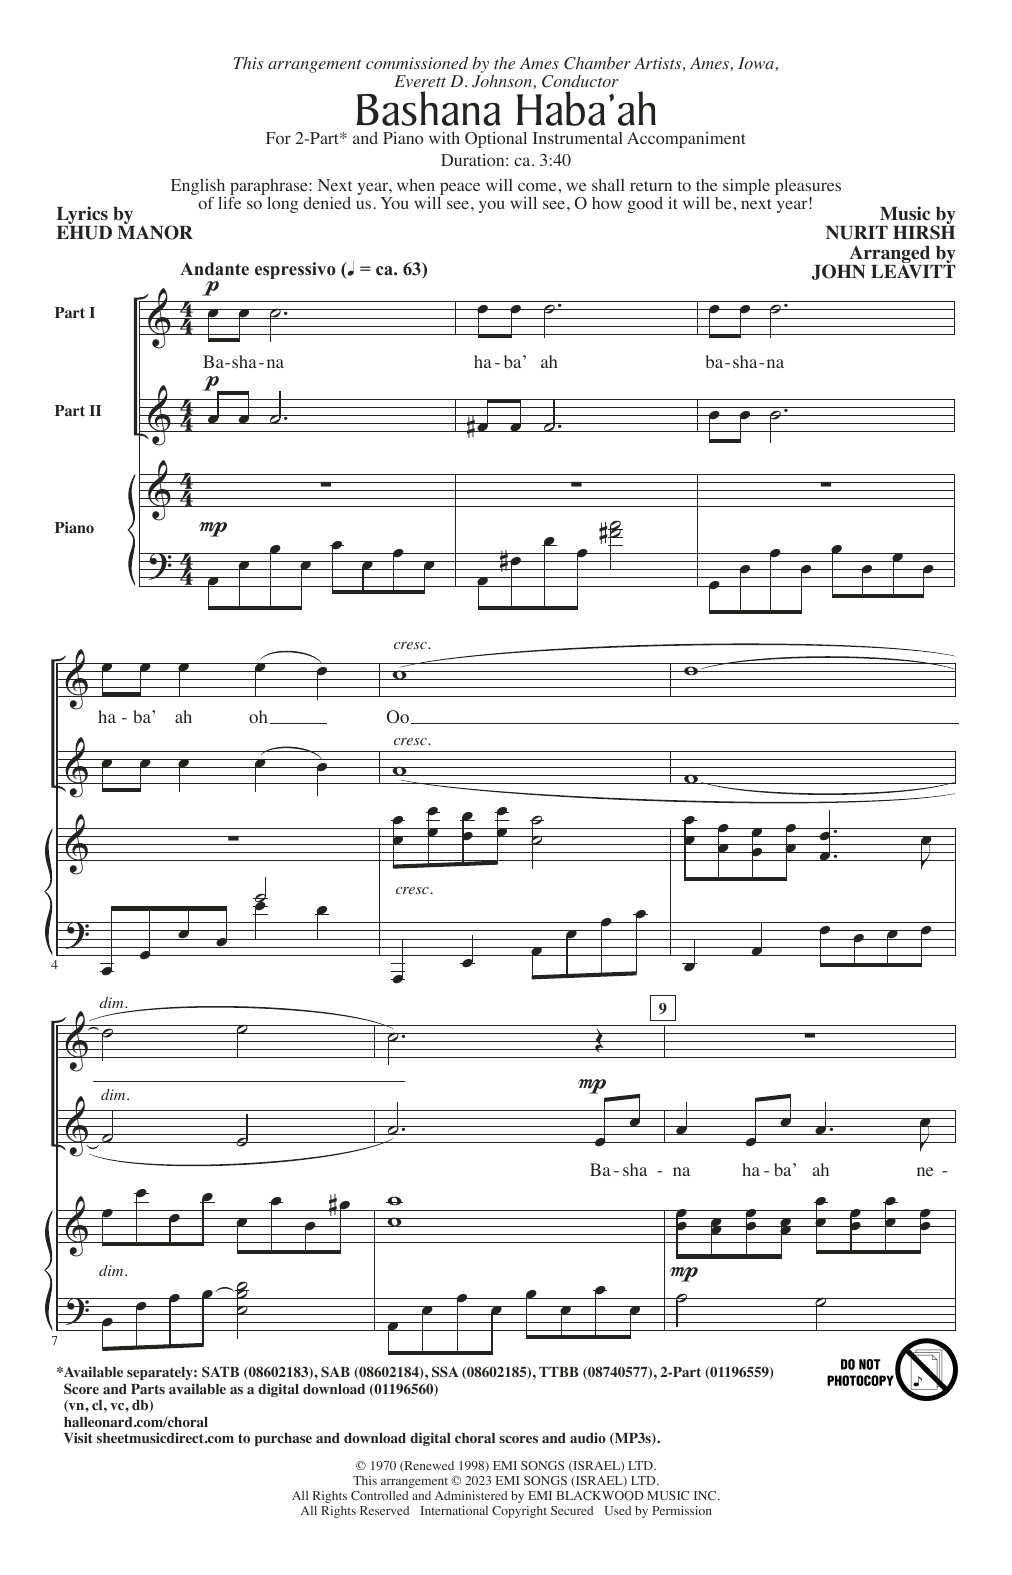 Nurit Hirsh Bashana Haba'ah (arr. John Leavitt) Sheet Music Notes & Chords for SSA Choir - Download or Print PDF